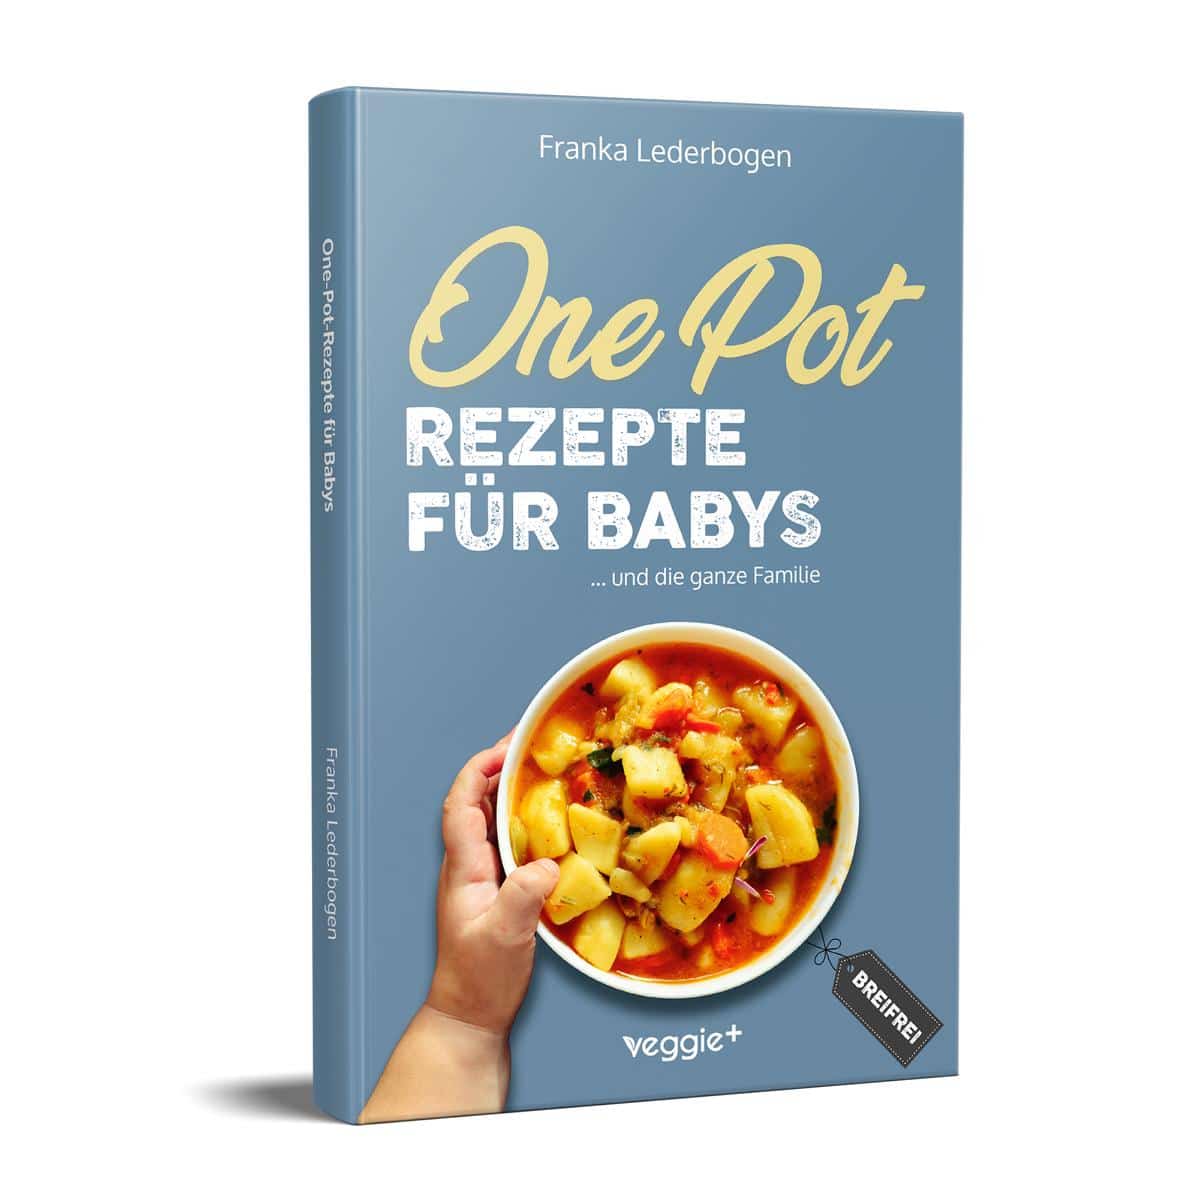 One-Pot-Rezepte für Babys: Das große Beikost-Kochbuch mit breifreien One-Pot-Gerichten für die ganze Familie von Franka Lederbogen im veggie + Verlag